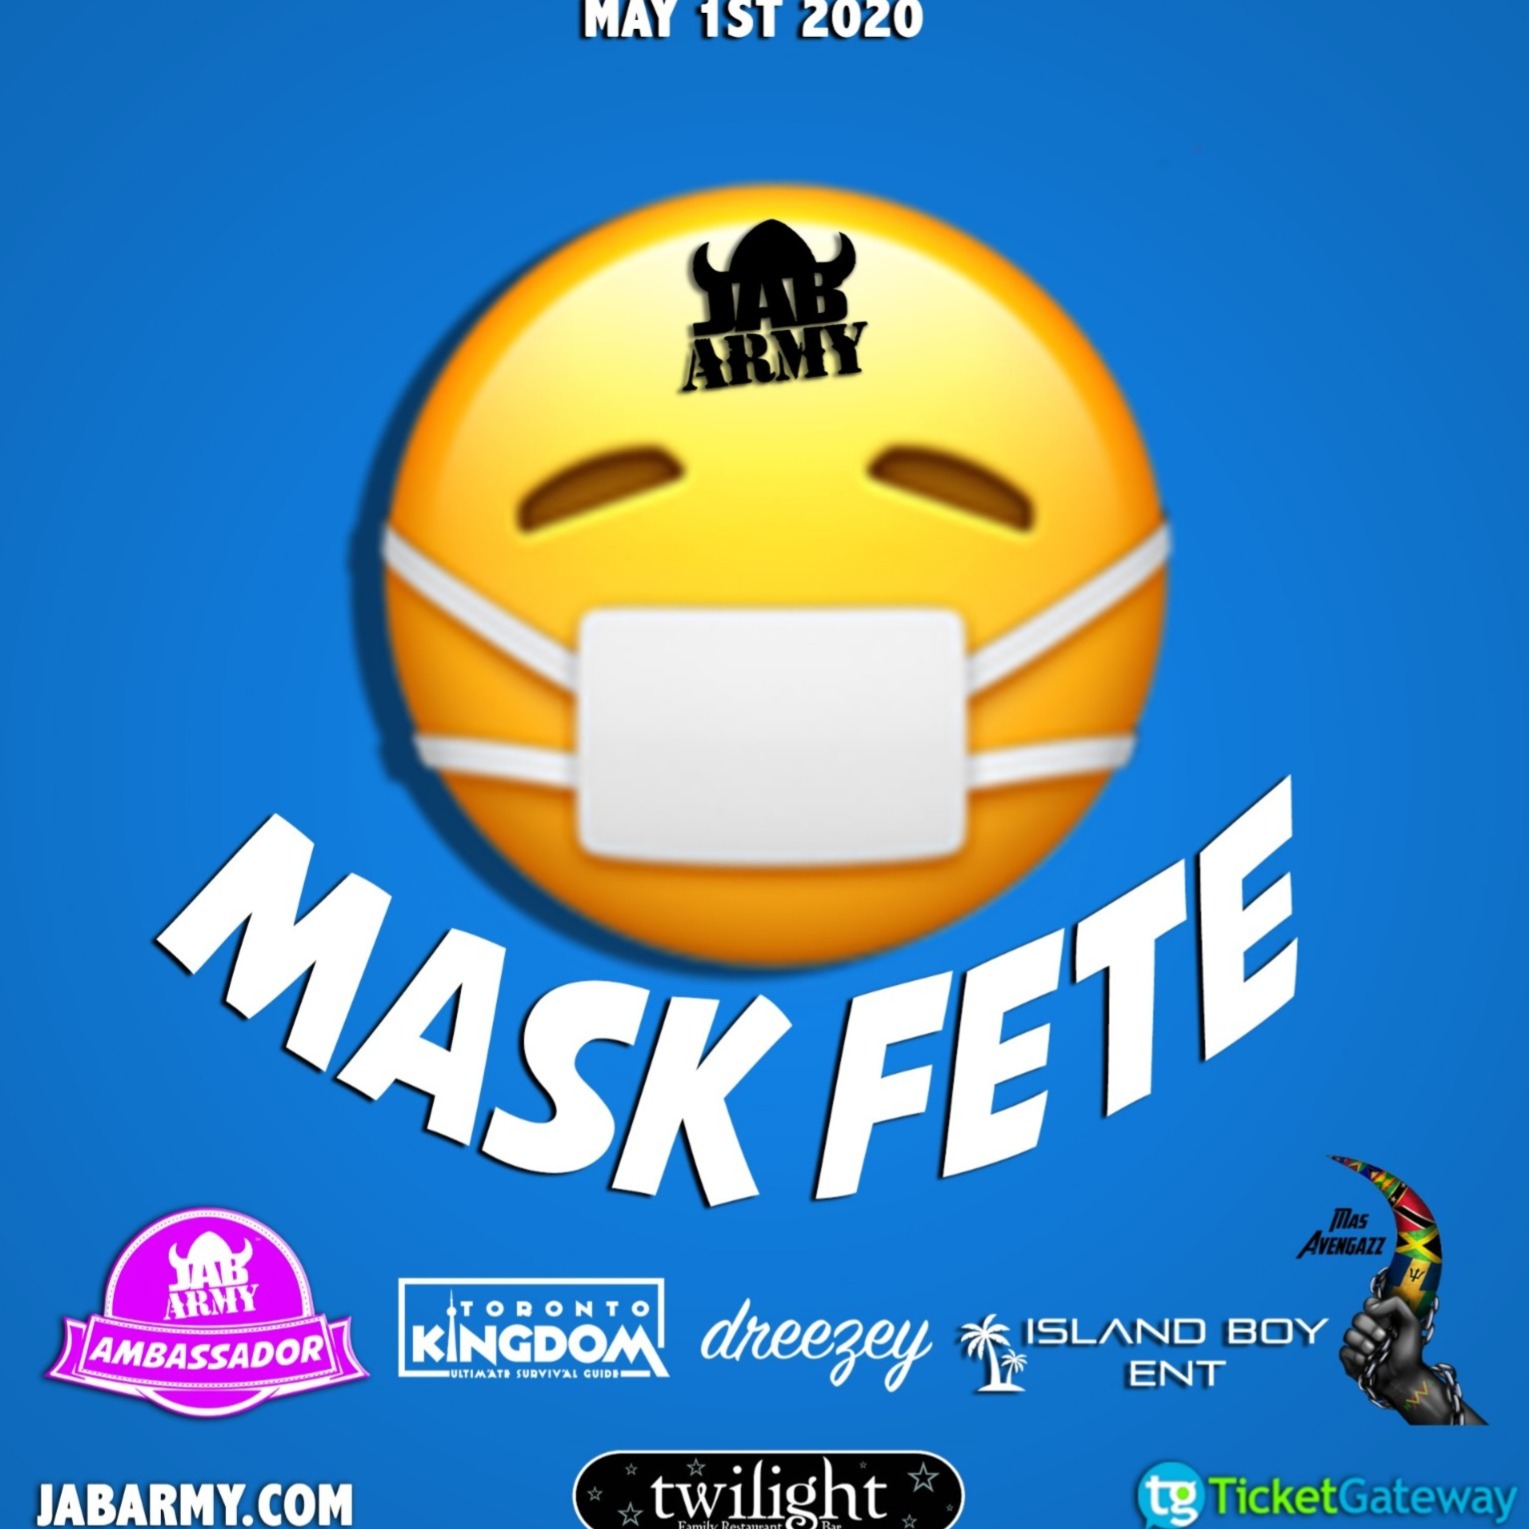 Mask Fete